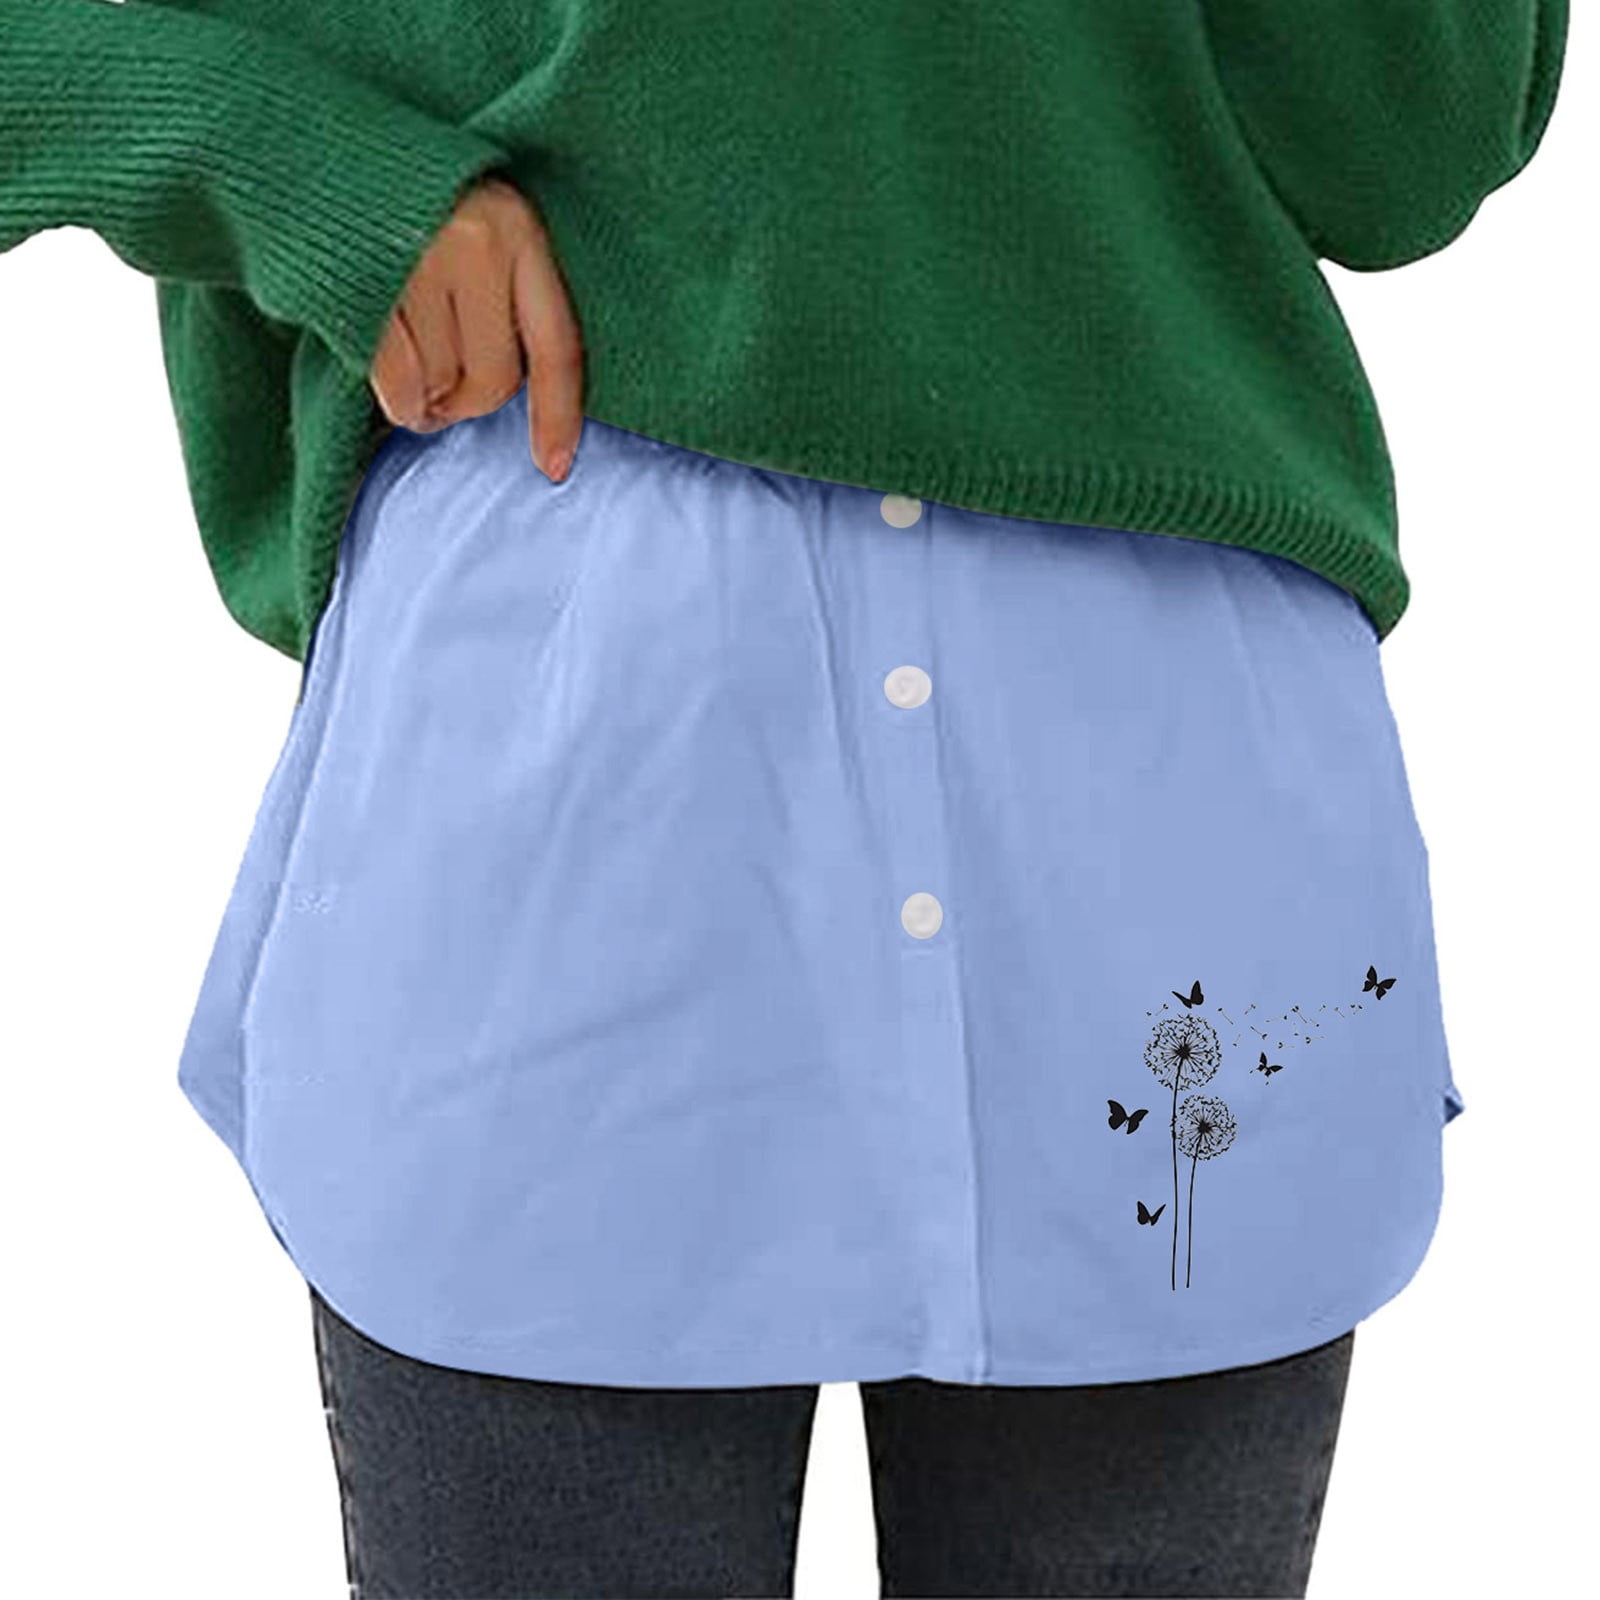 Women's High Waist Fold Over Pocket Shirring Skirt,Skirts For Women(4XL,Blue)  - Walmart.com